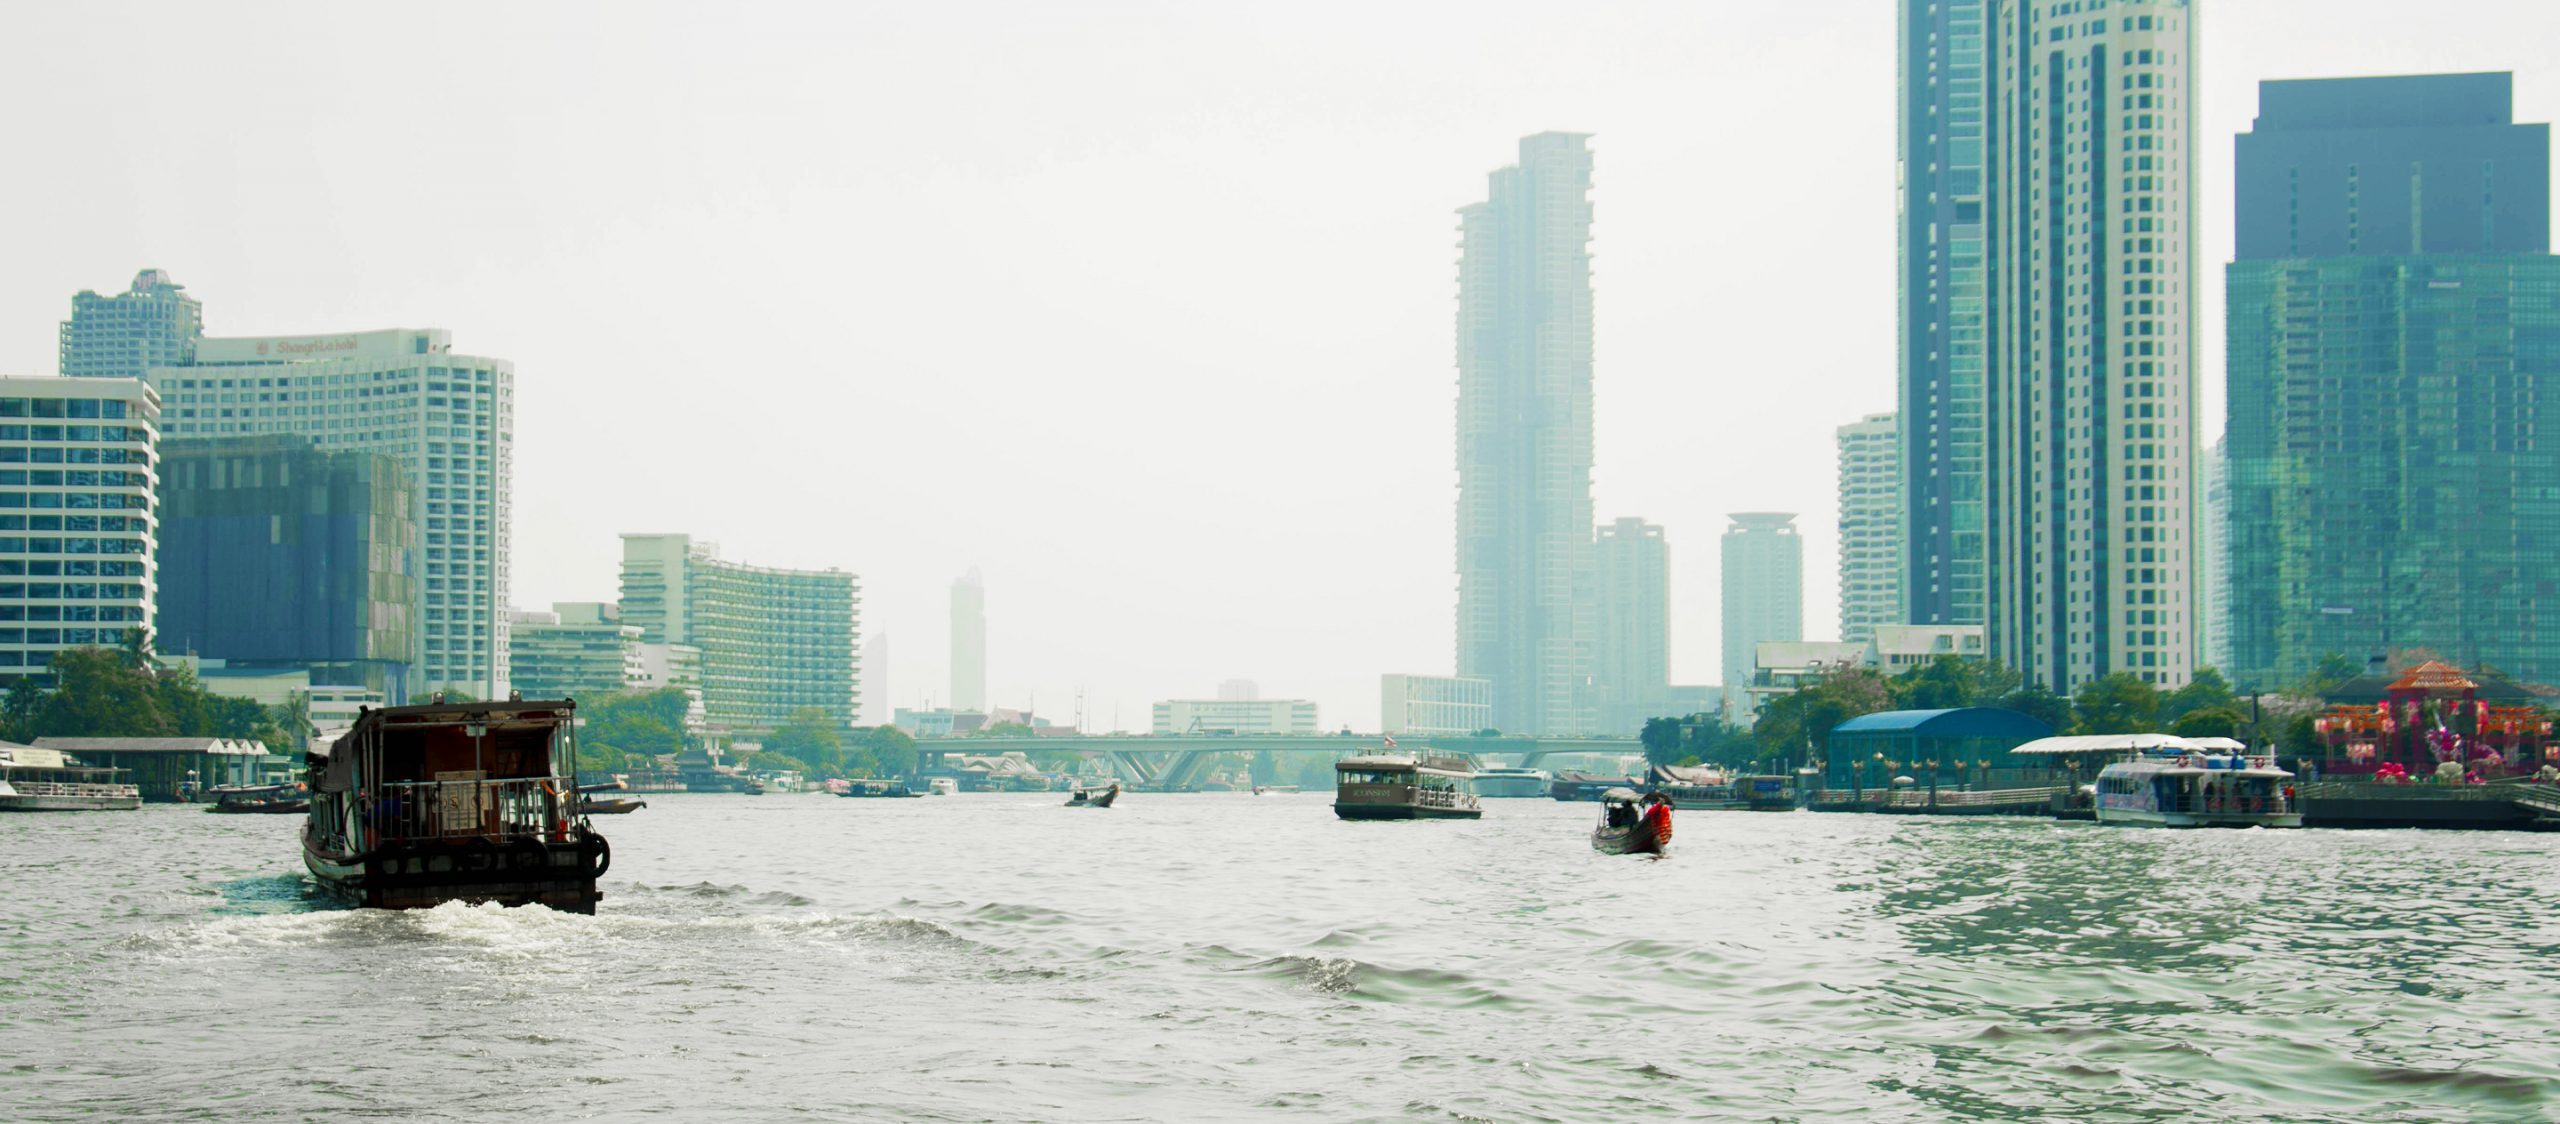 ท่าเรือแบบไหนถึงจะเข้าท่า? หาคำตอบกับ MAYDAY! ใน Bangkok Design Week 2020